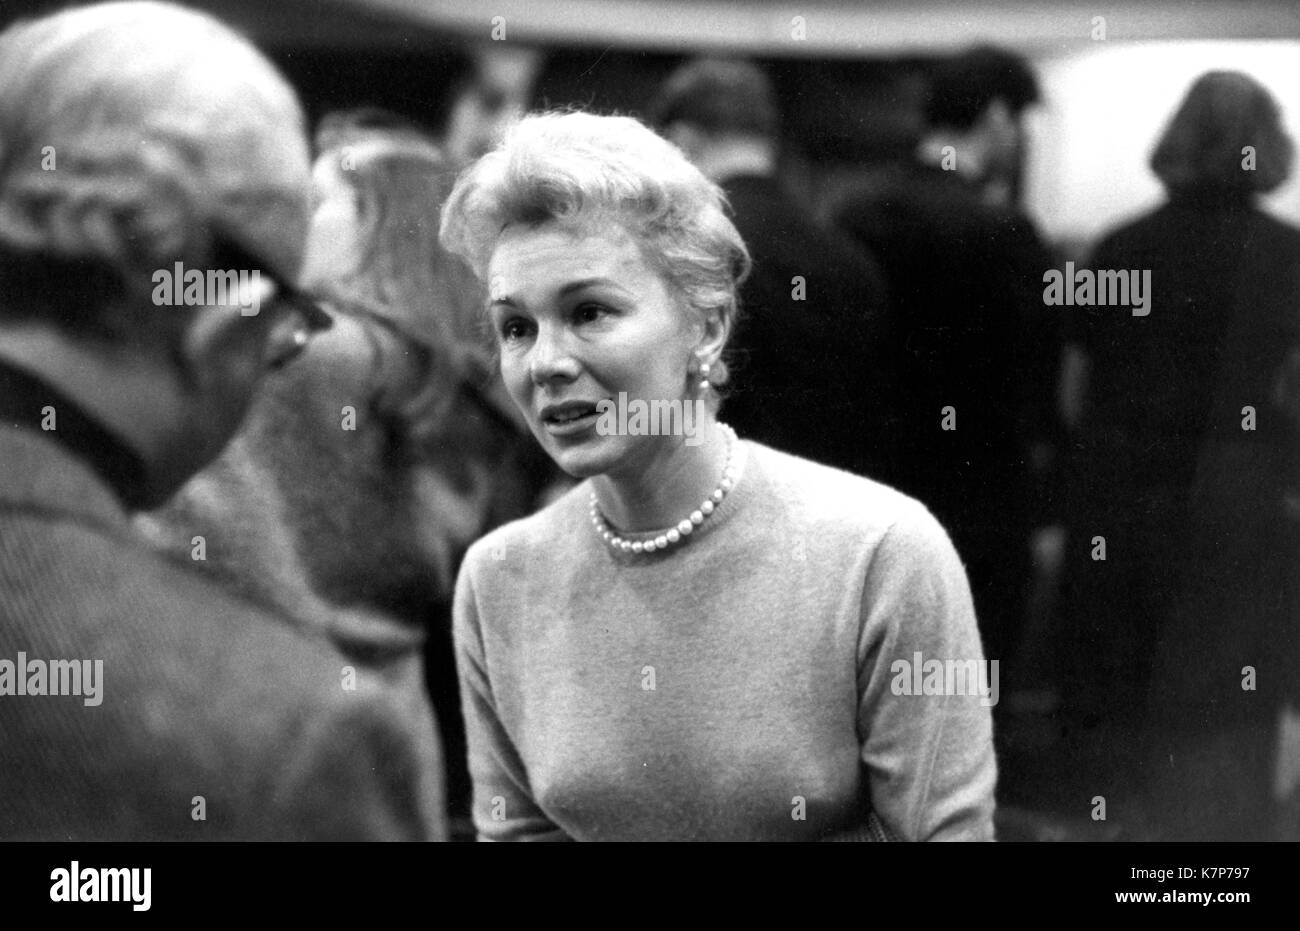 Schauspielerin Eva Gabor behandelt eines der Projekte die Tage im Studio des Schauspielers mit Lee Strasberg (an der Rückseite der Kamera), Direktor des Studios, New York, NY, 1957. Stockfoto